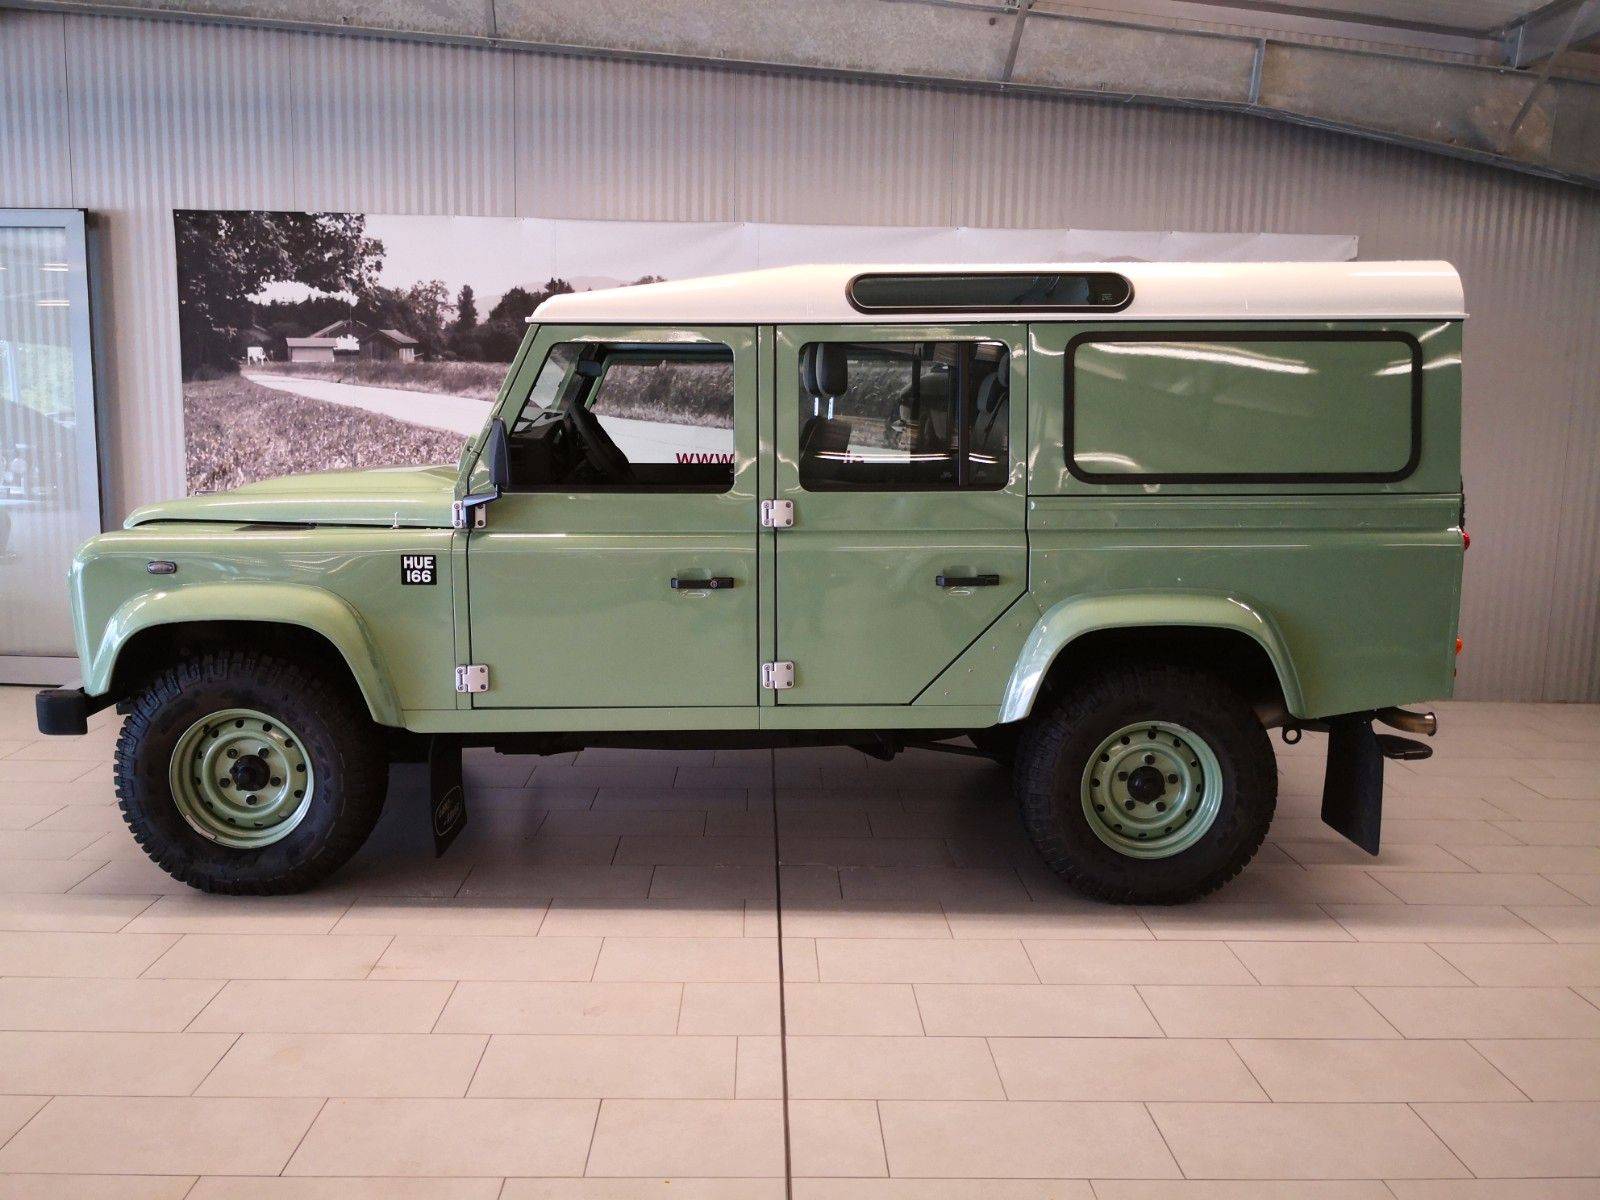 bunker Seminarie Gevoelig Te koop: Land Rover Defender 110 (2015) aangeboden voor € 86.900